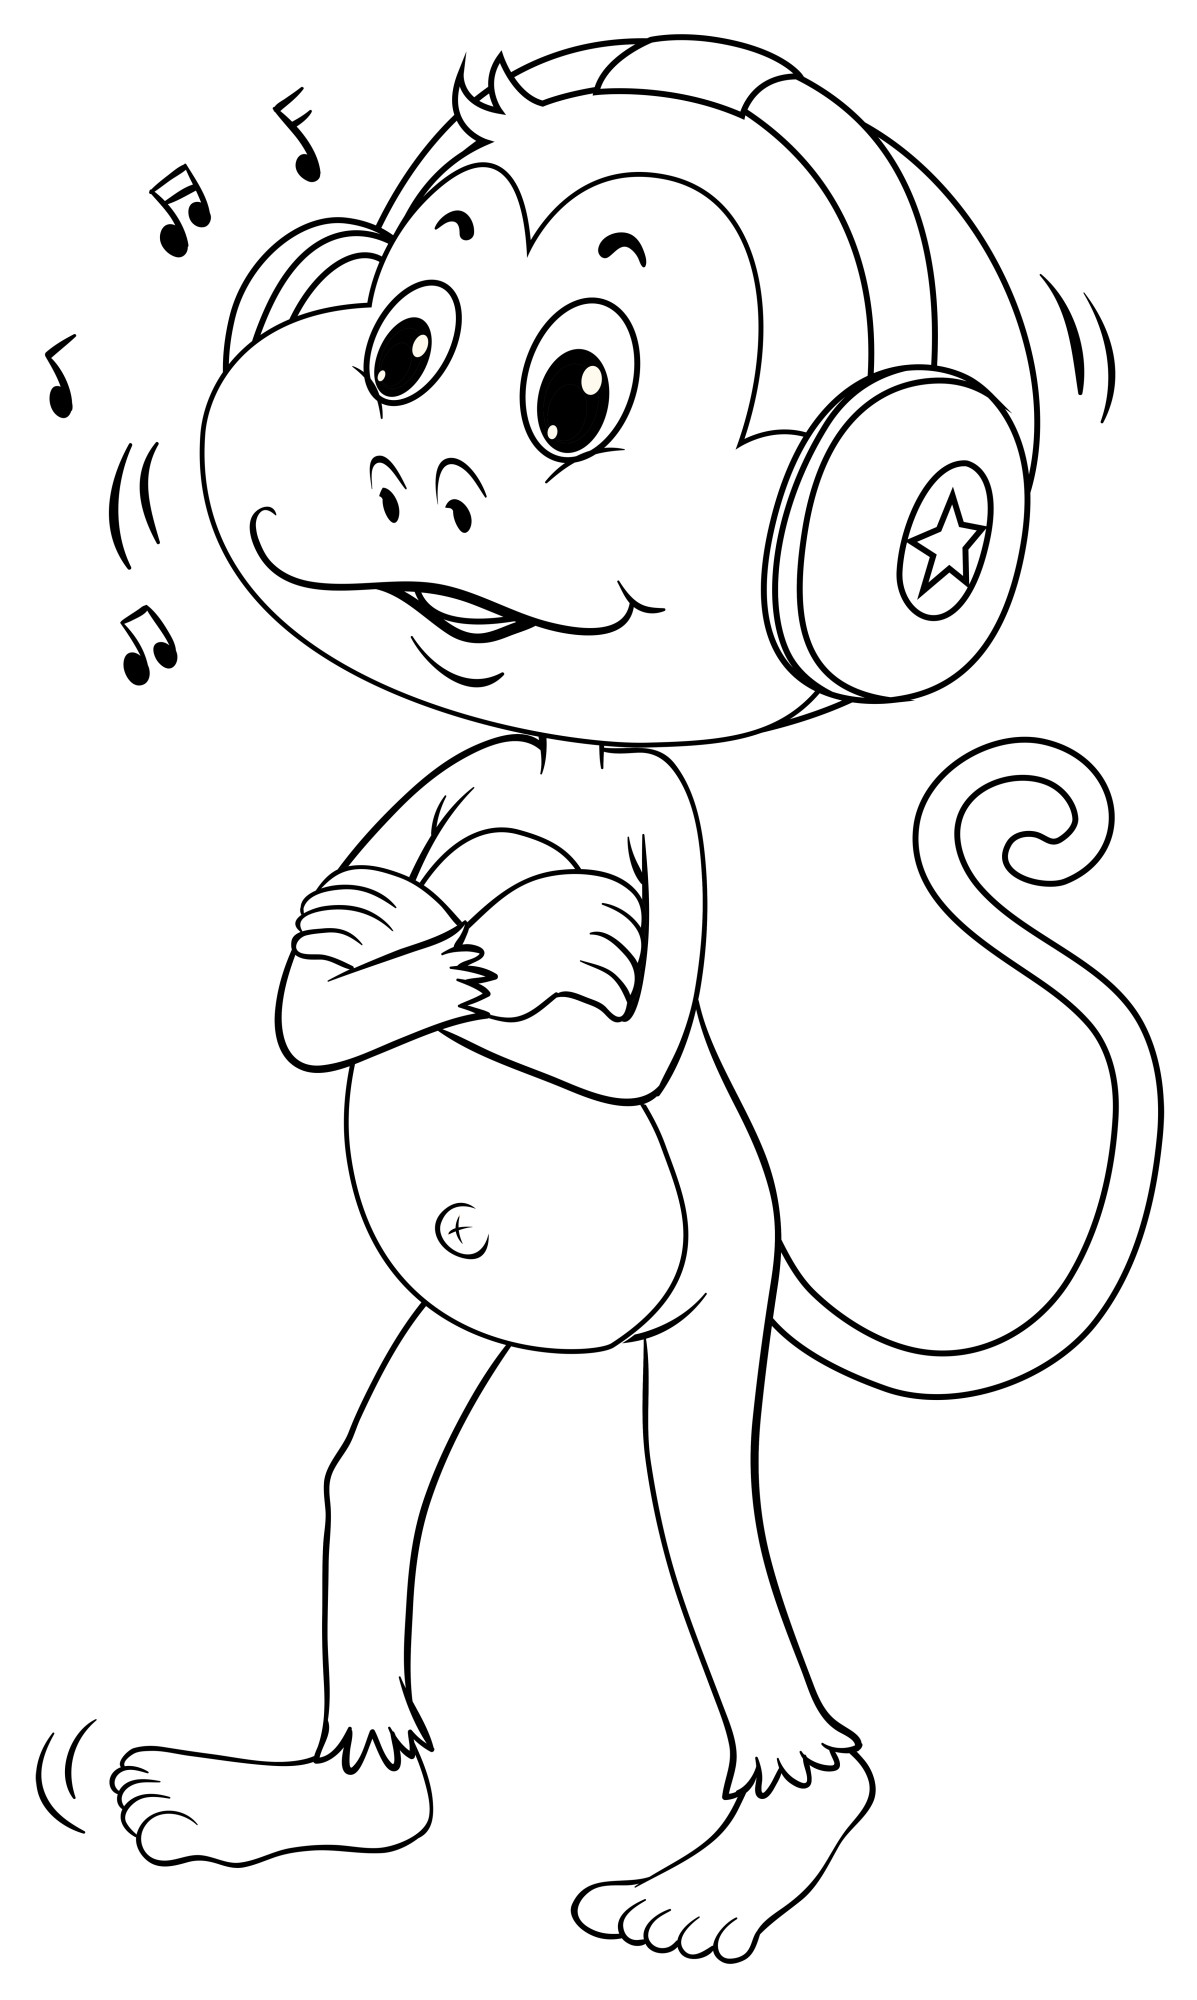 Раскраска для детей: обезьяна слушает музыку в наушниках